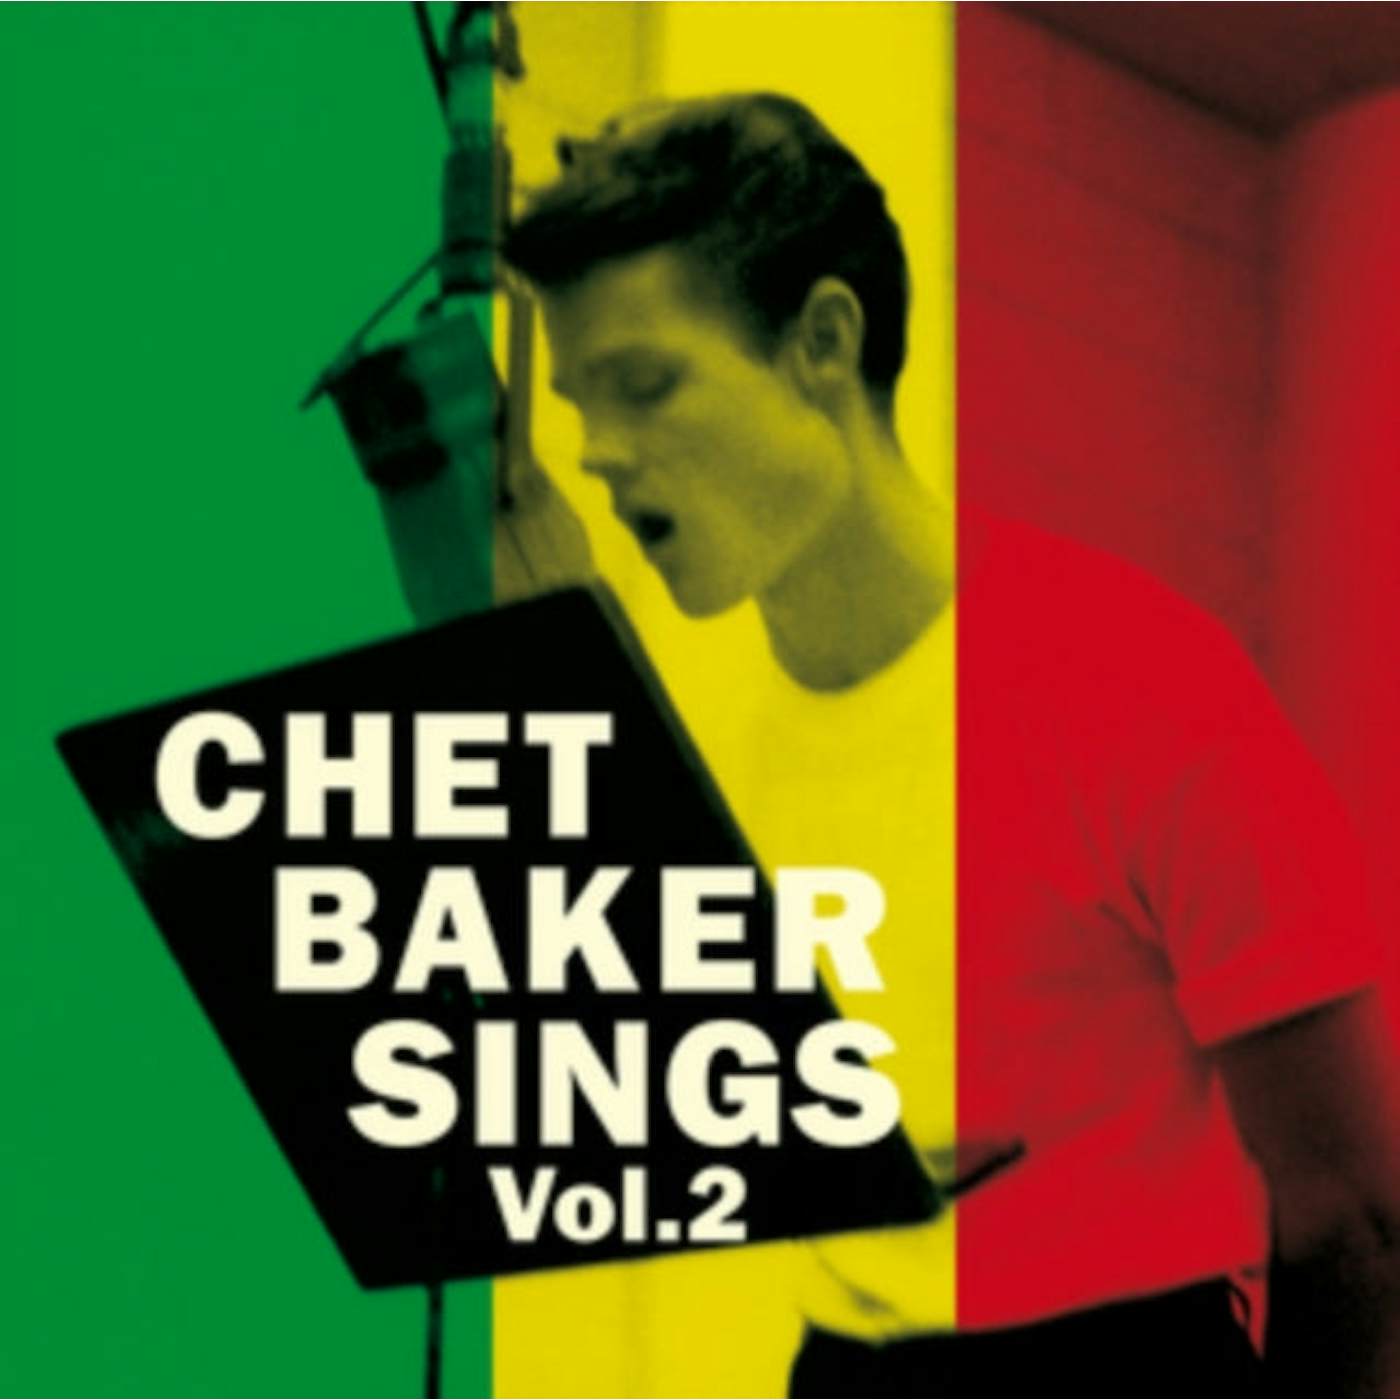 Chet Baker LP Vinyl Record  Chet Baker Sings Vol. 2 (Limited Edition)